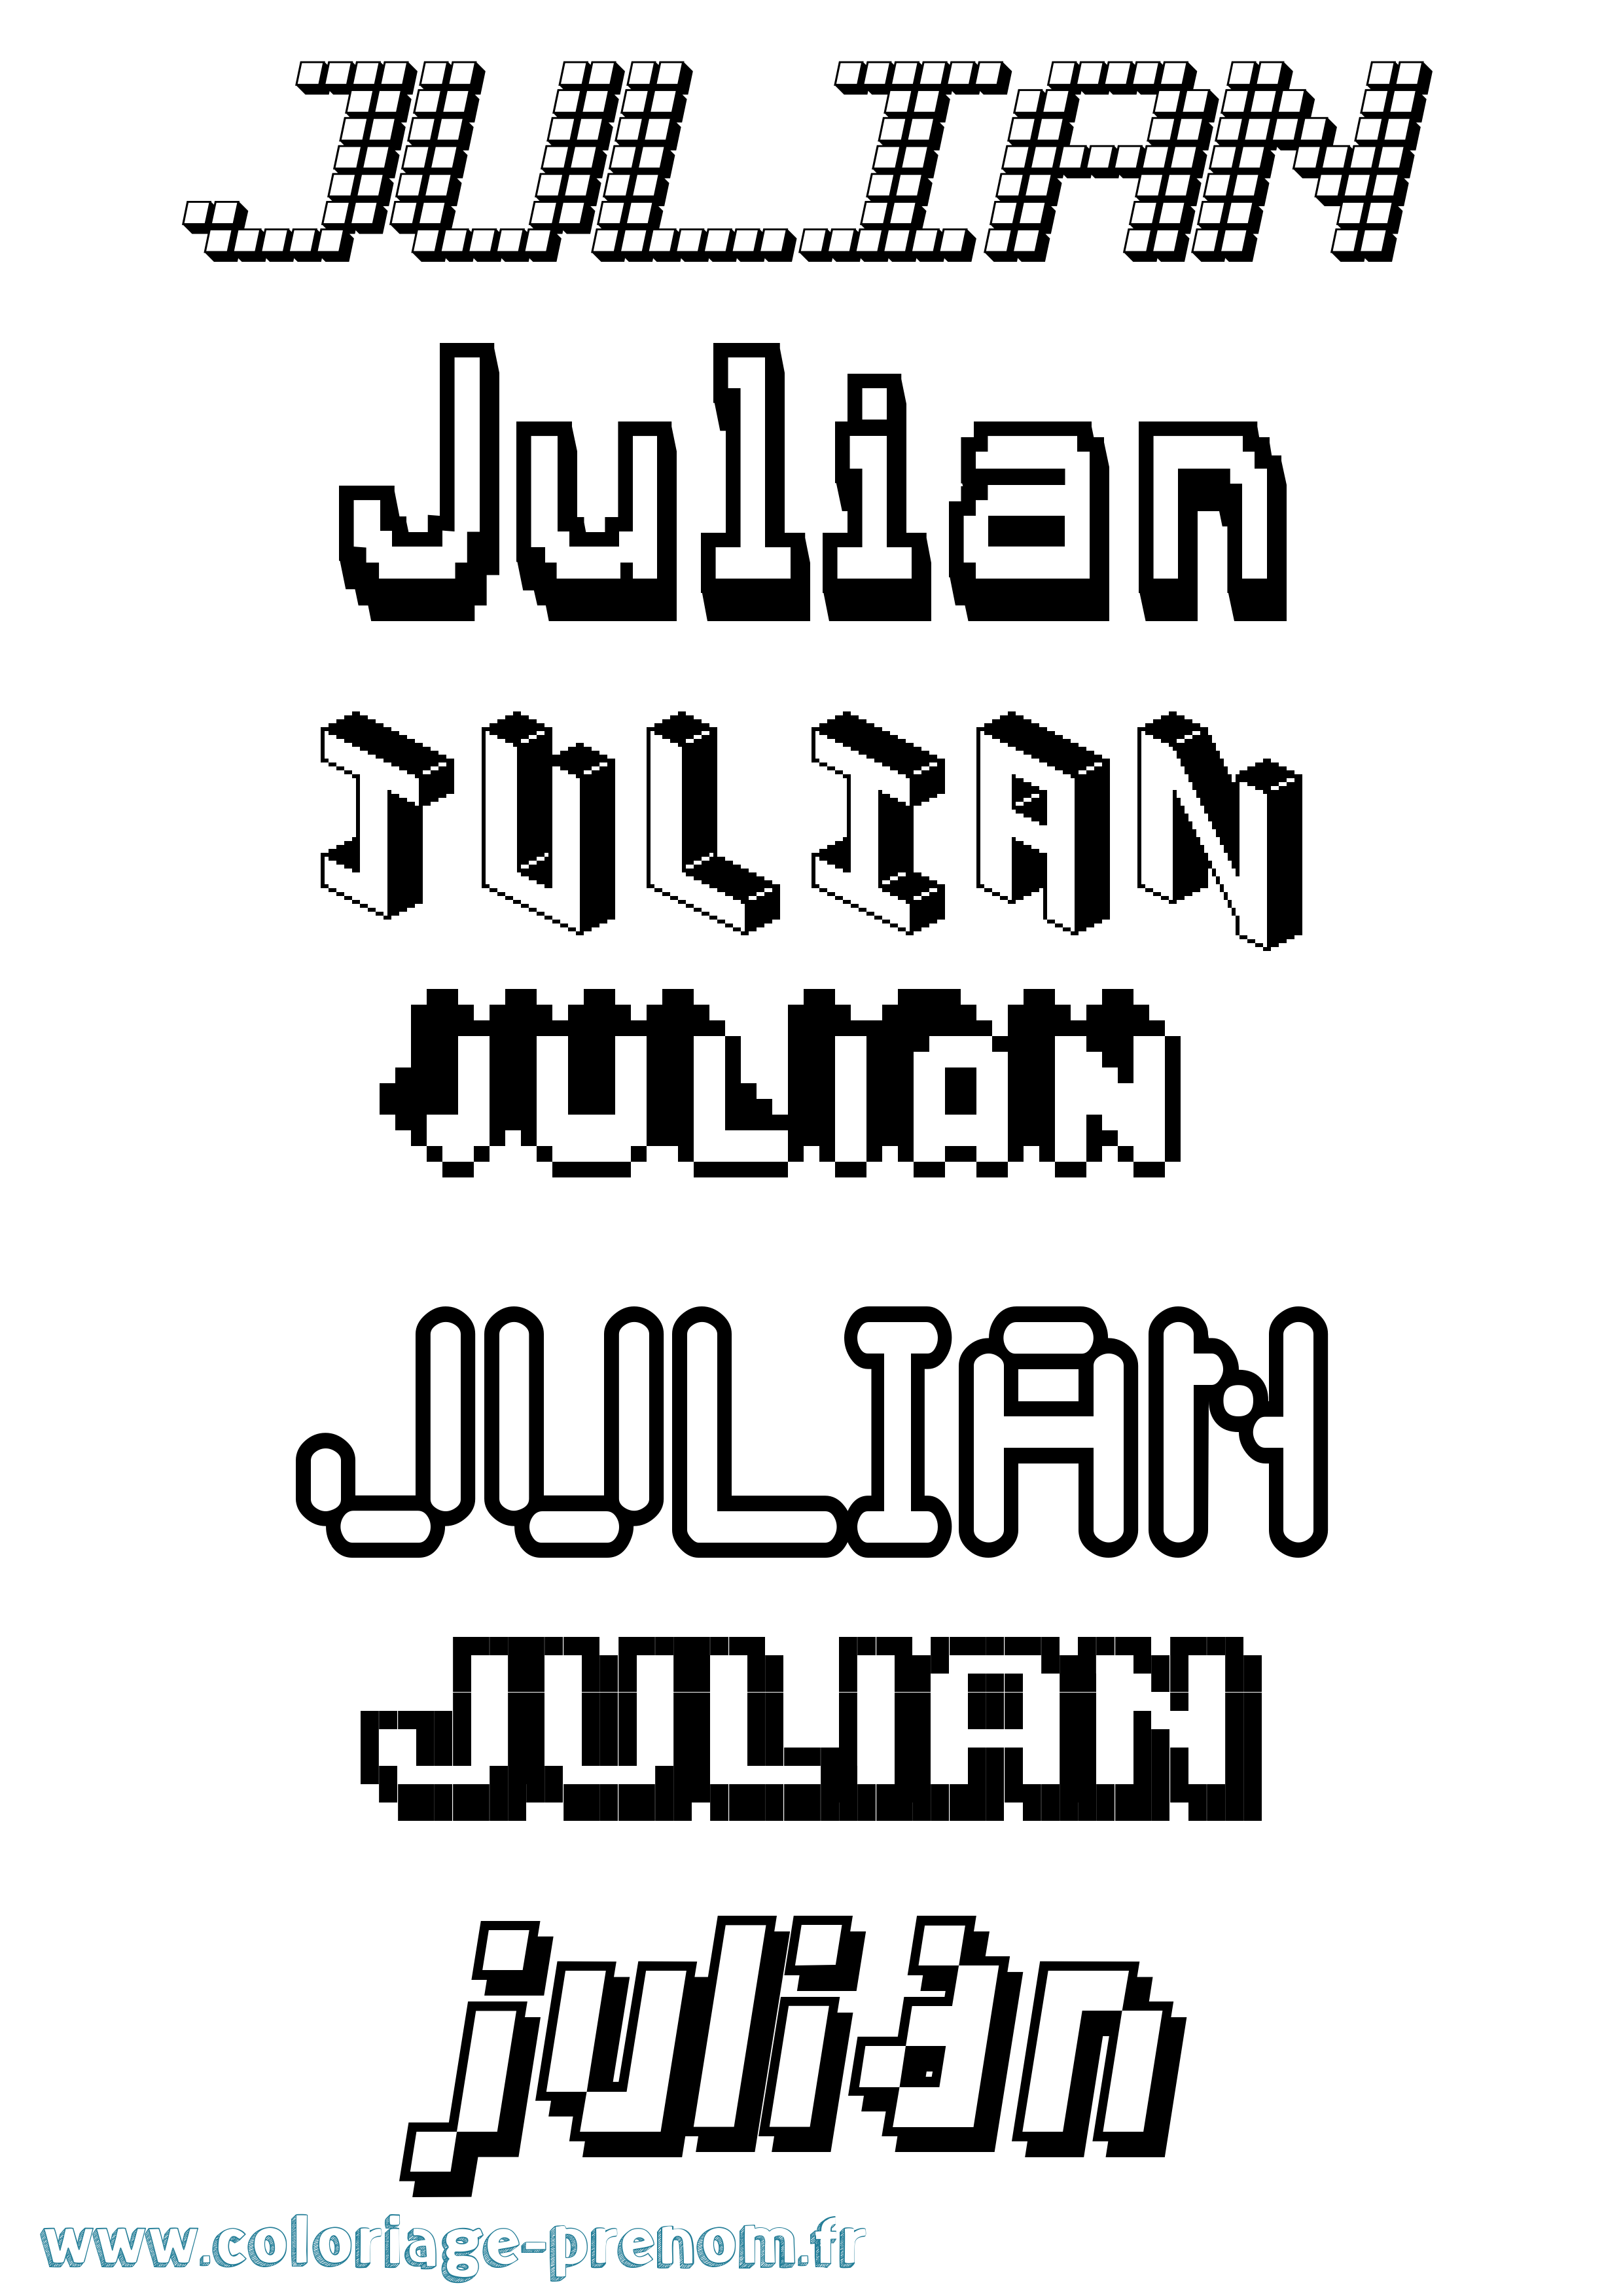 Coloriage prénom Julian Pixel